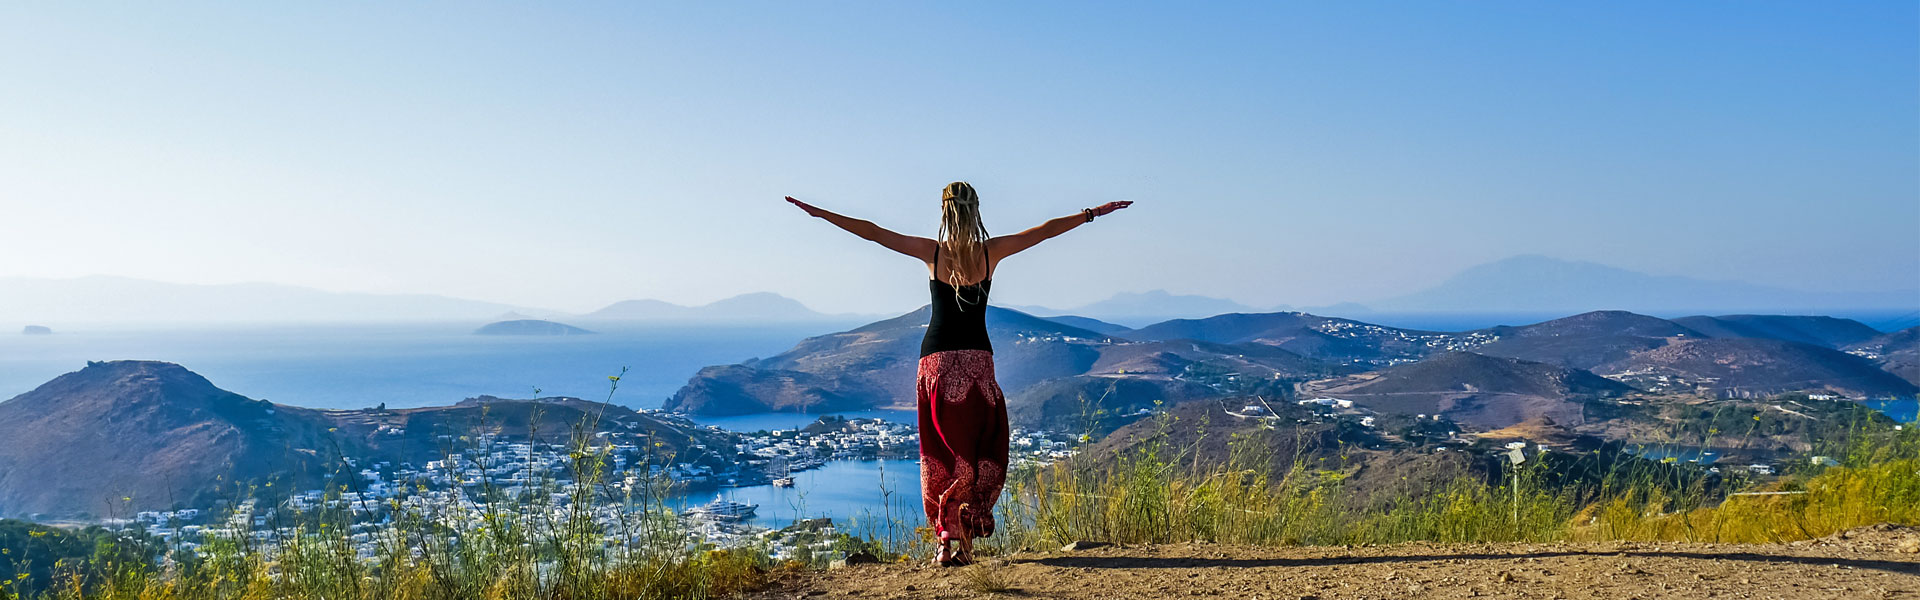 Dreadlock girl on Patmos overlooking ocean and islands